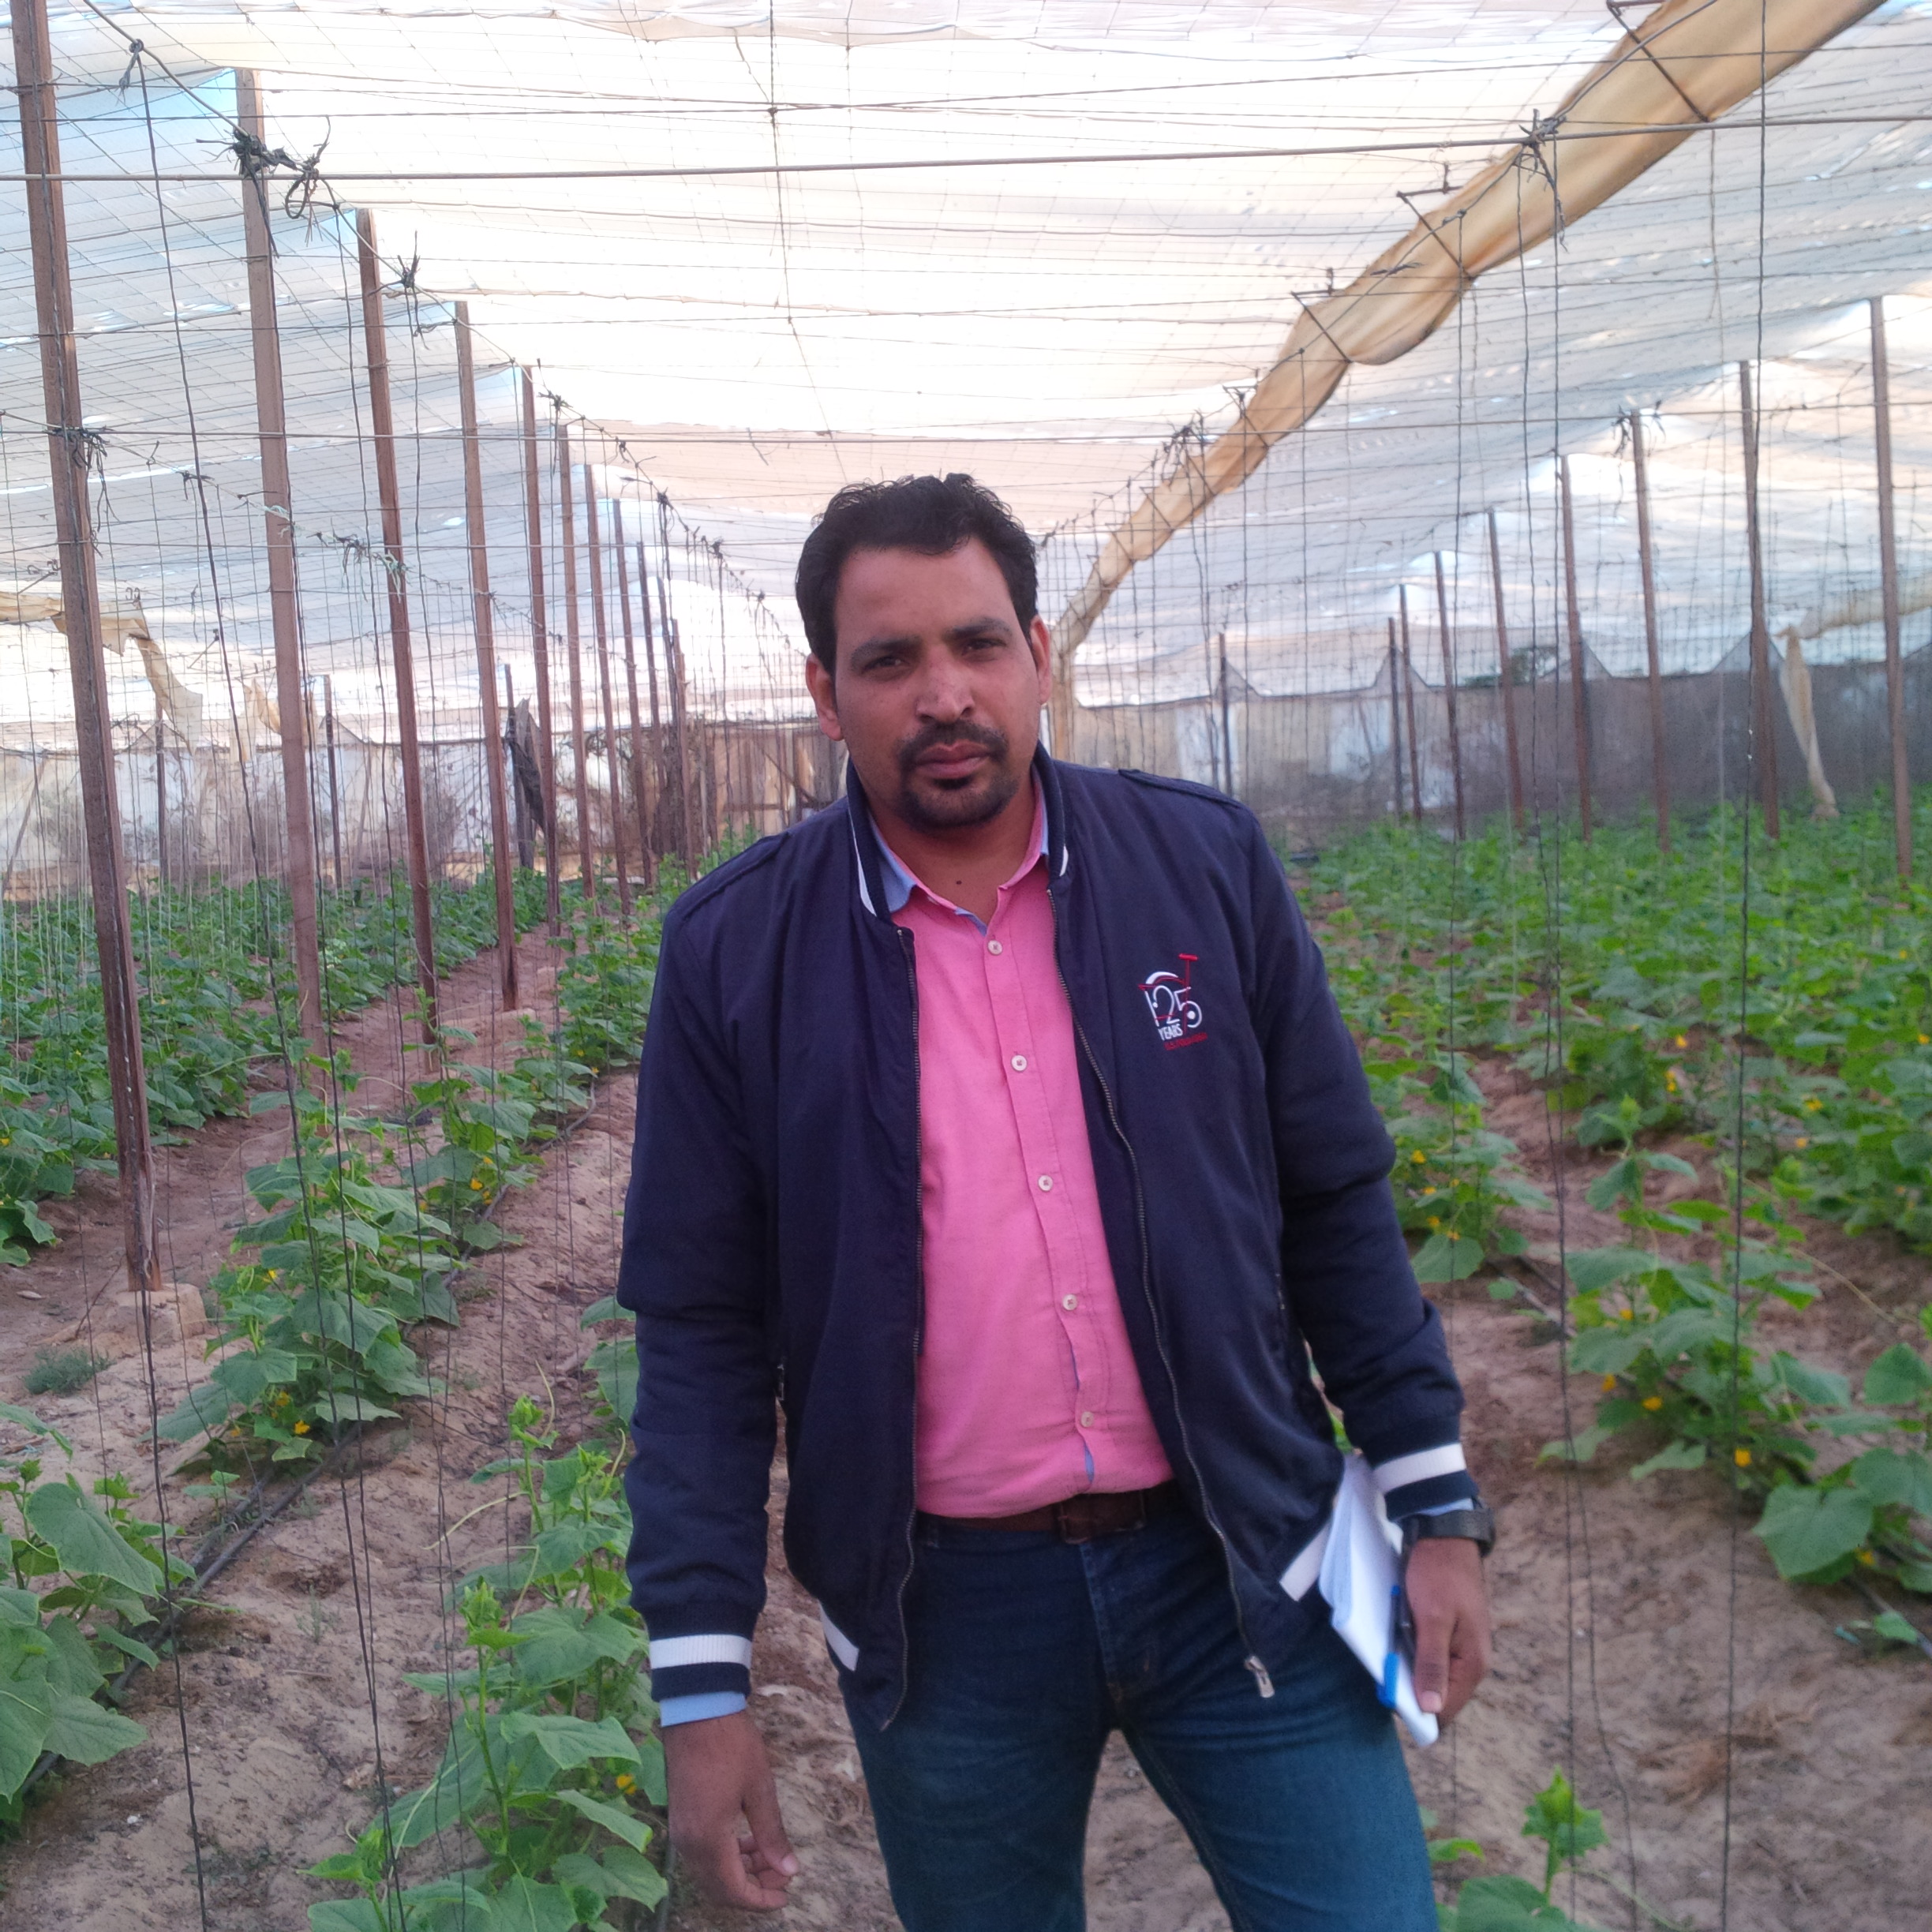 الزميل عز النوبى والصوب الزراعية  بالمنطقة الحدودية المصرية  الليبية